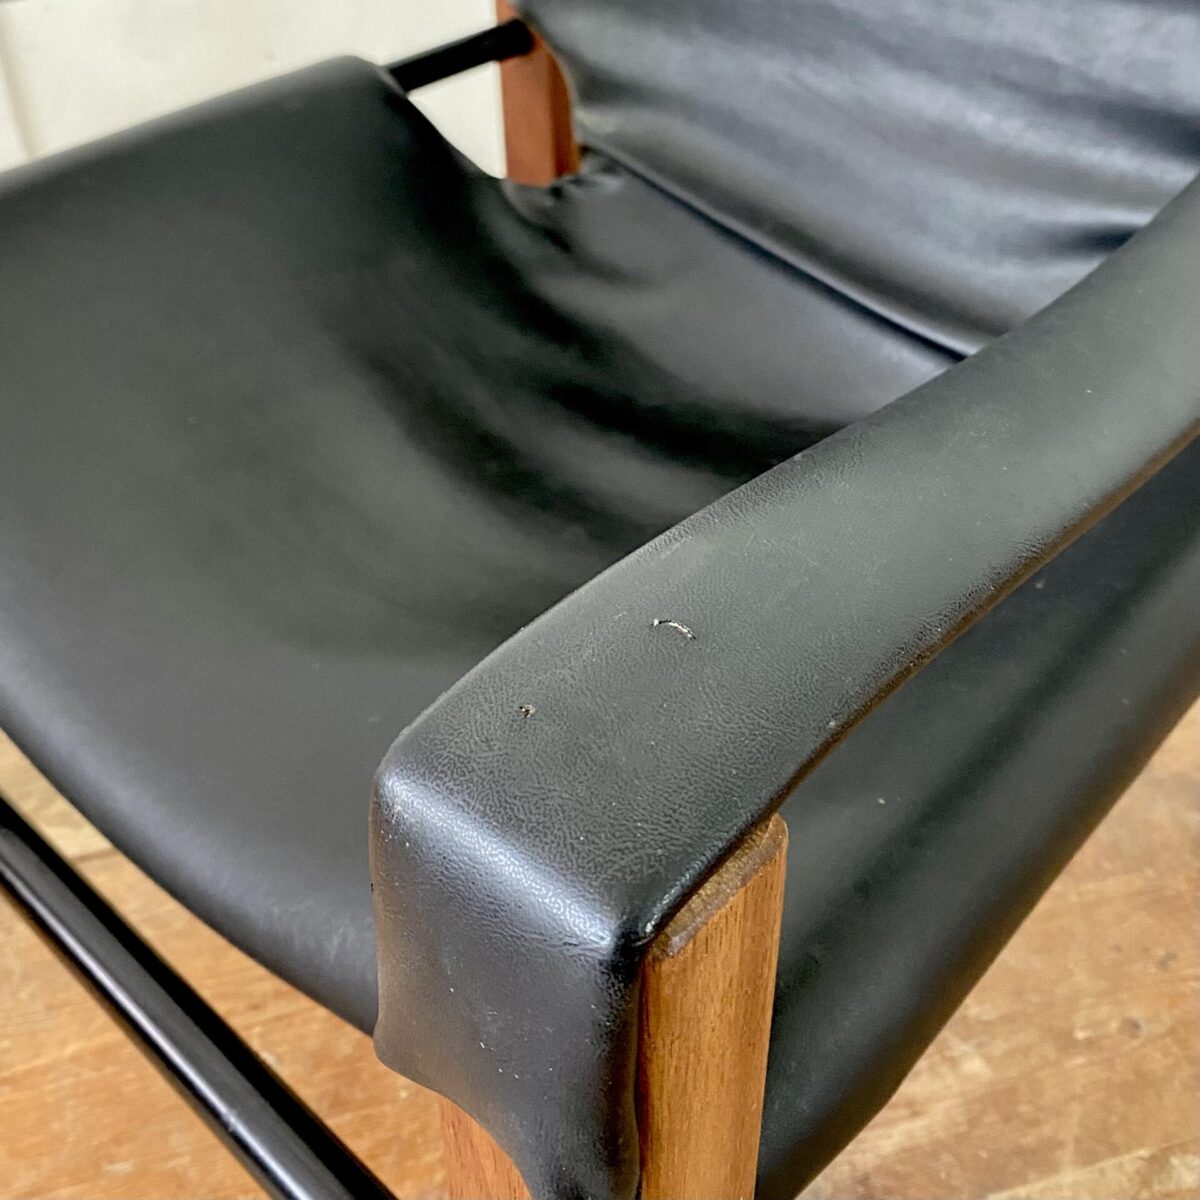 Deuxieme.shop Easy Chair Cocktail Sessel. Safari Sessel von Maurice Burke, hergestellt von Arkana in den 60er Jahren. 62x62cm Höhe 70cm Sitzhöhe ca. 30cm. Material, schwarzes Kunstleder (Vinyl). Die Lehne neigt sich mit der Sitzposition mit. Ein paar kleine Schäden im Bezug, und ein längerer oberflächlicher Kratz hinten, sind auf den Fotos dokumentiert. Das Teakholz ist in gutem Zustand mit leichten Gebrauchsspuren. 